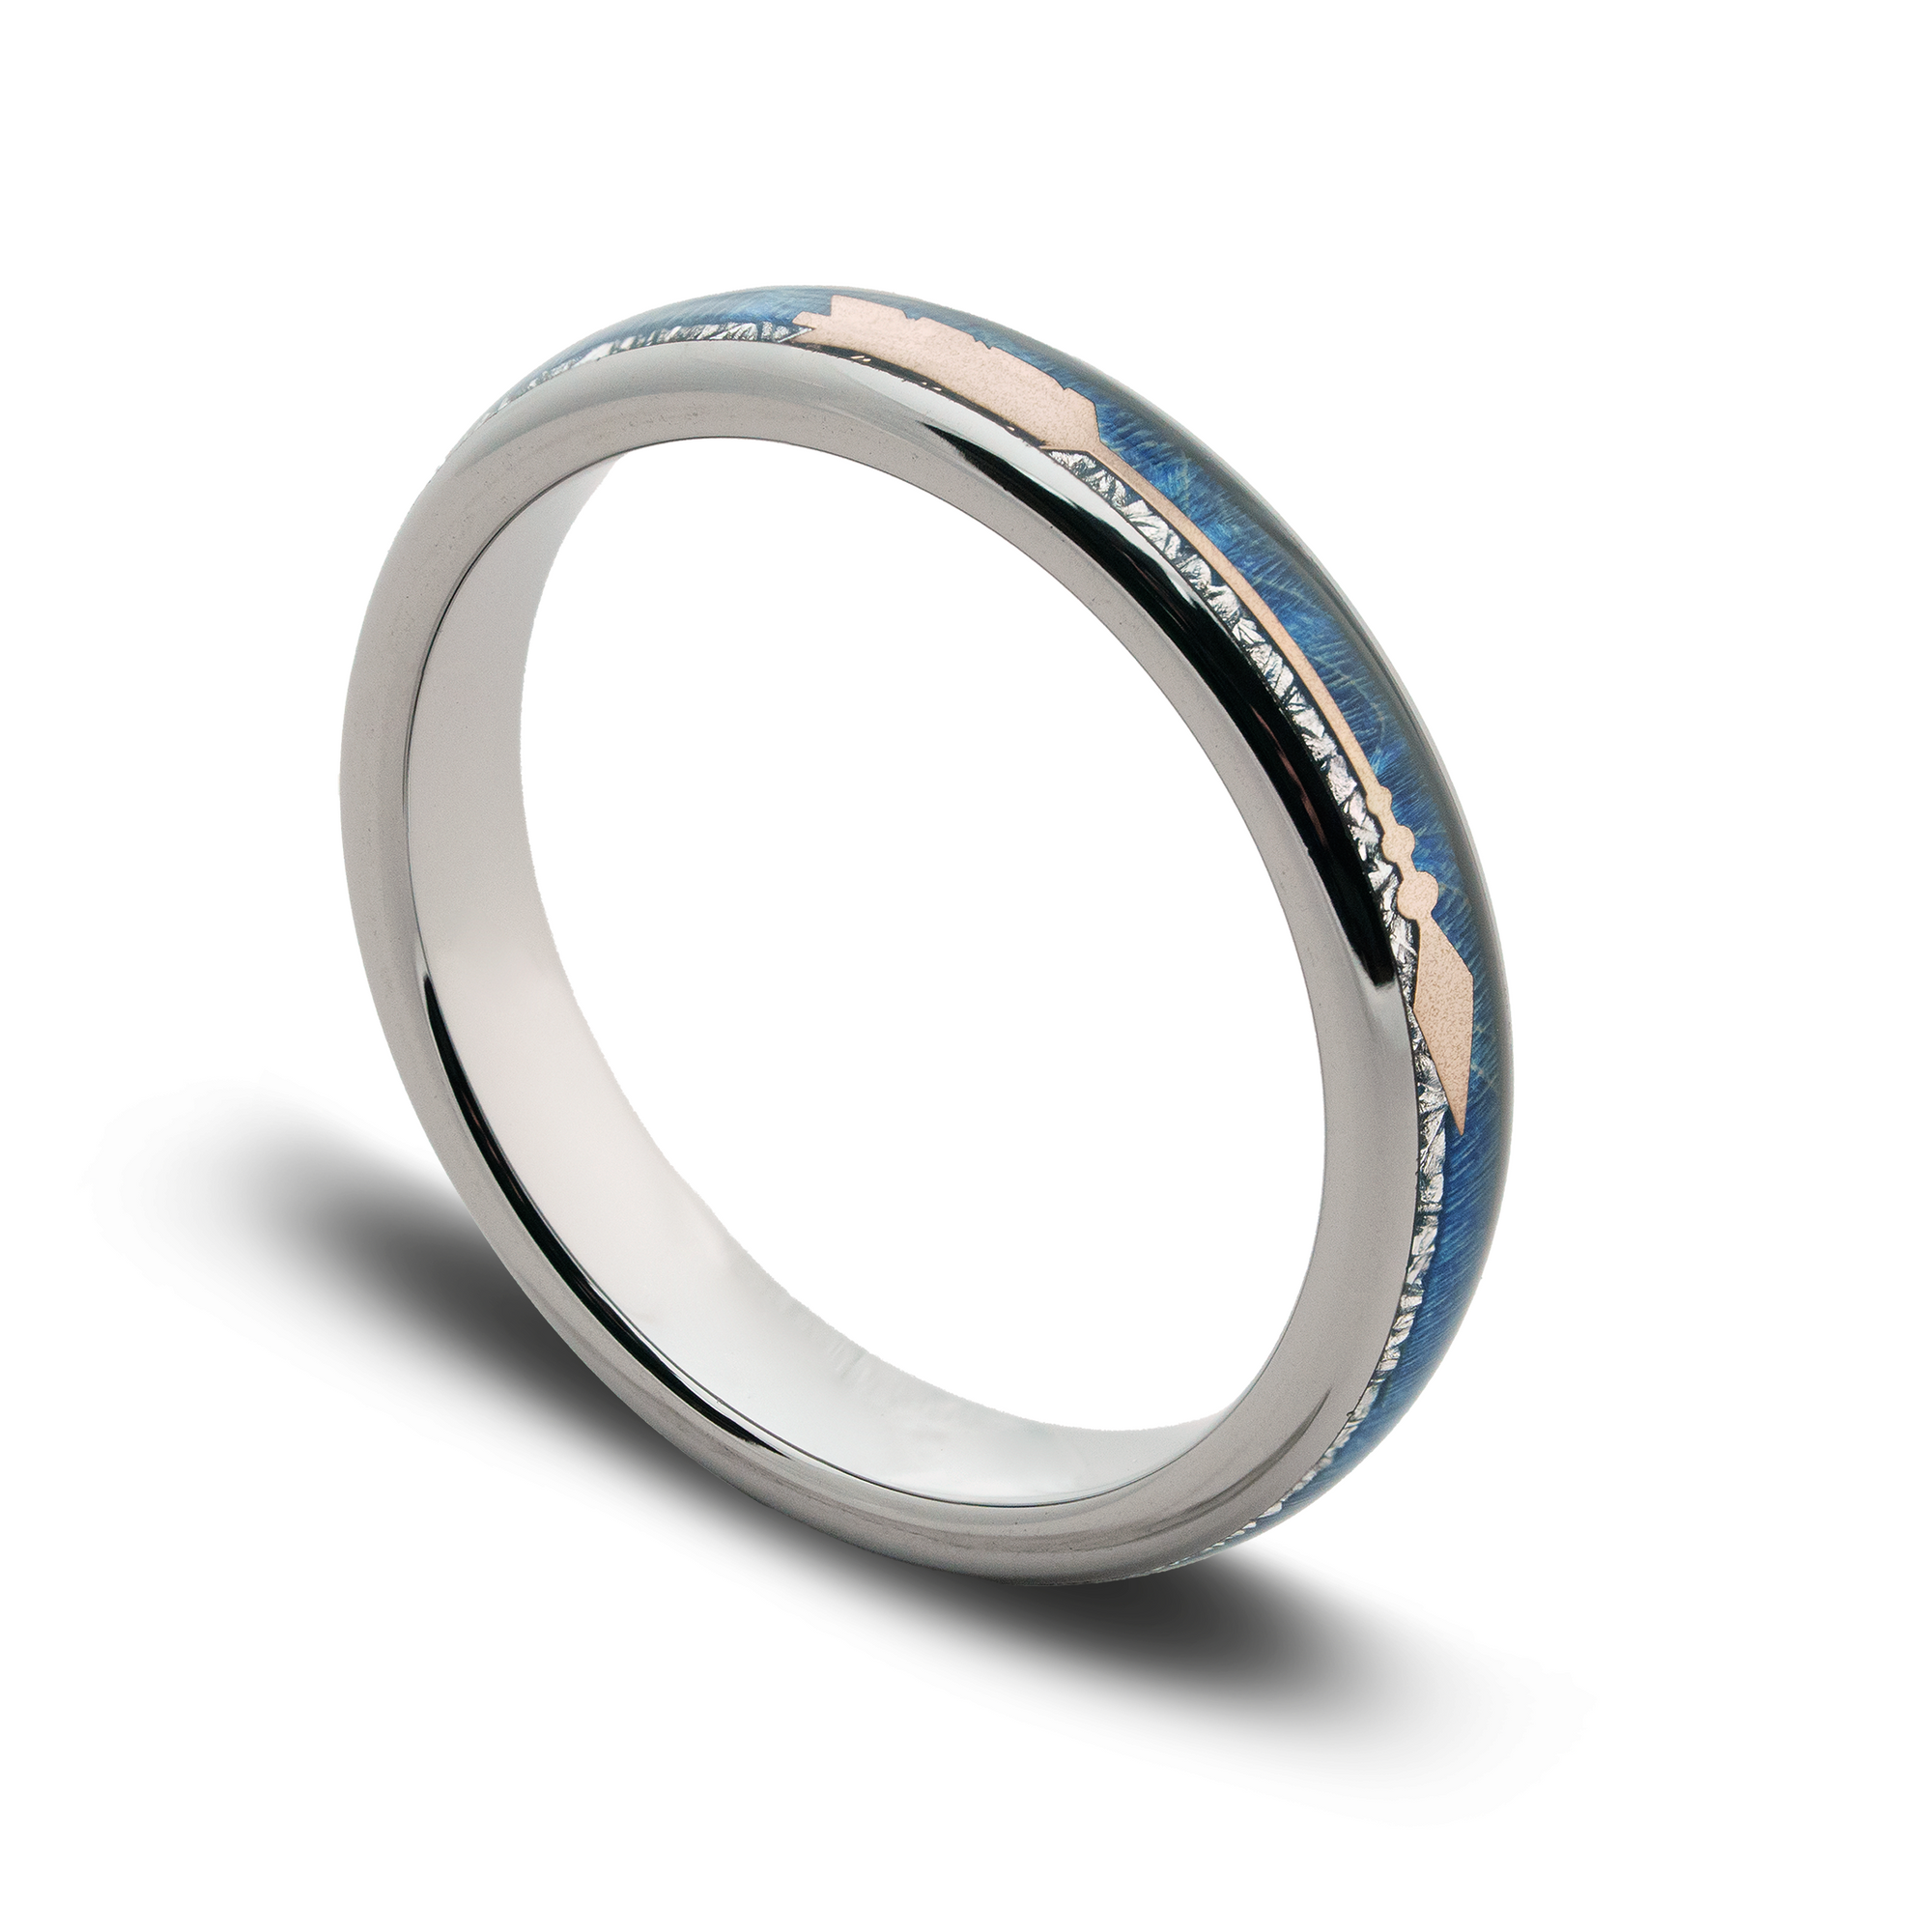 The “Artemis” Ring